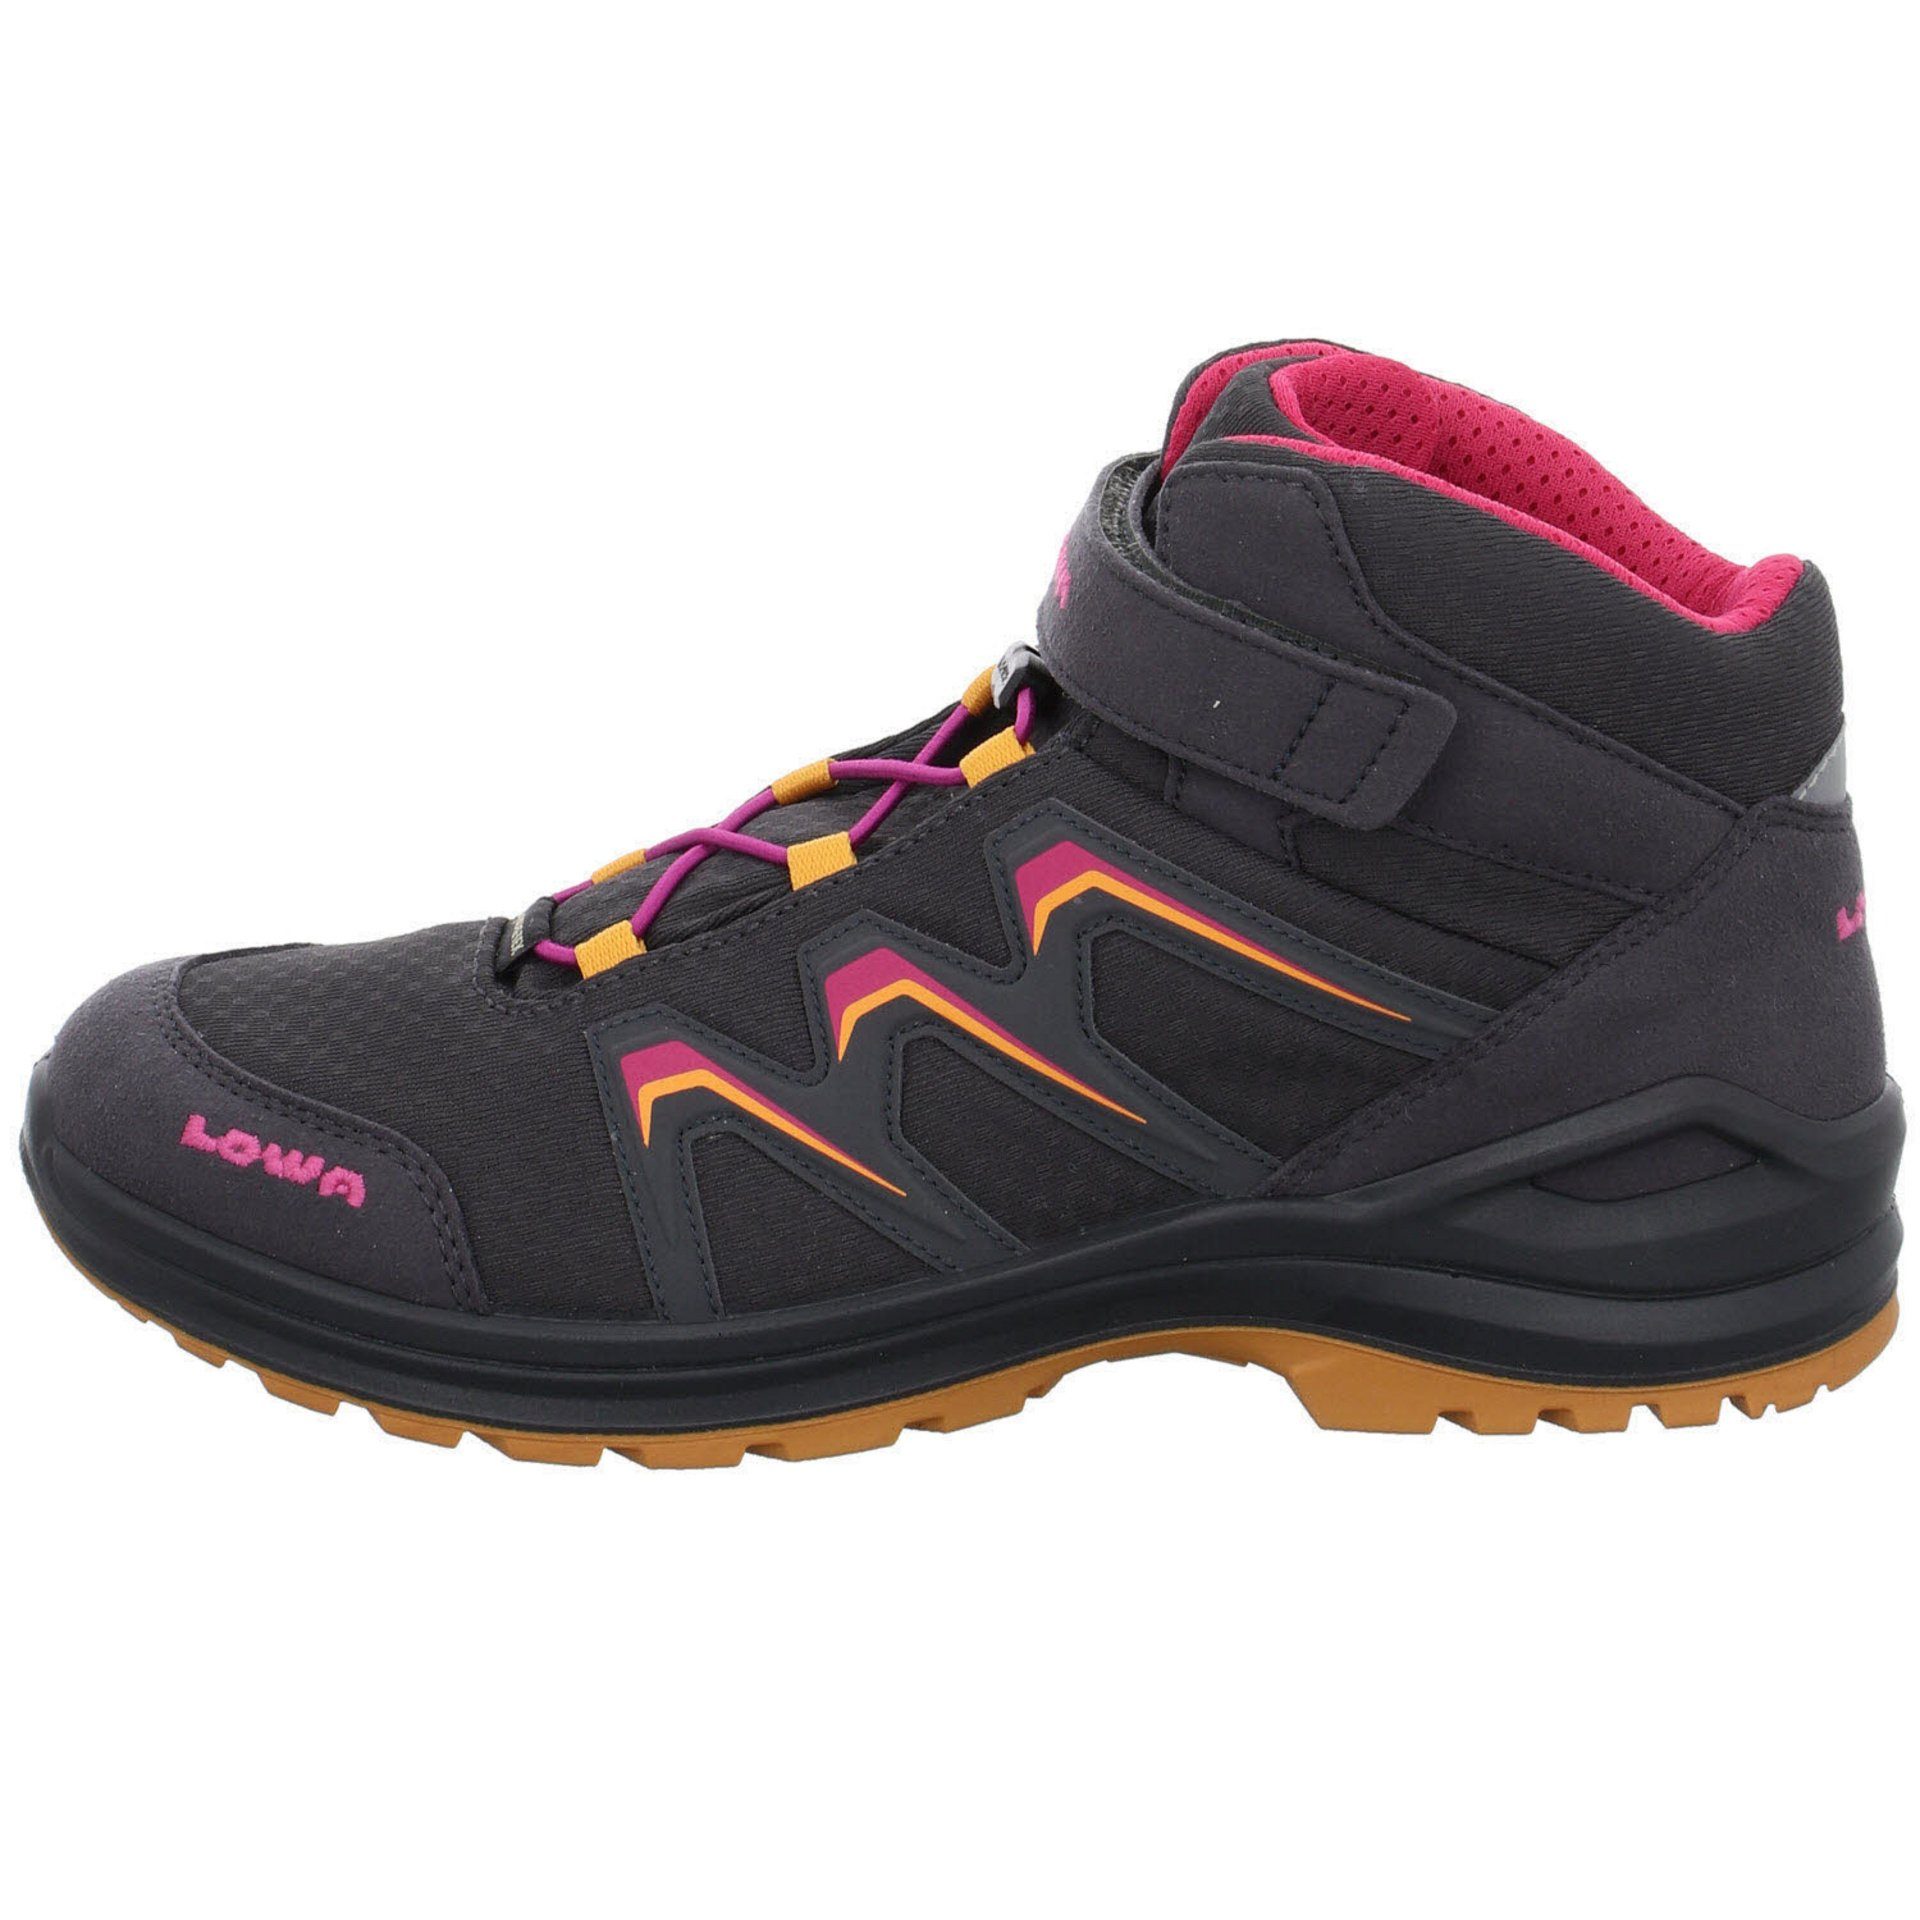 GTX Maddox Stiefel GRAPHIT/MANDARINE Lowa Boots Textil Jungen Stiefel Warm Schuhe